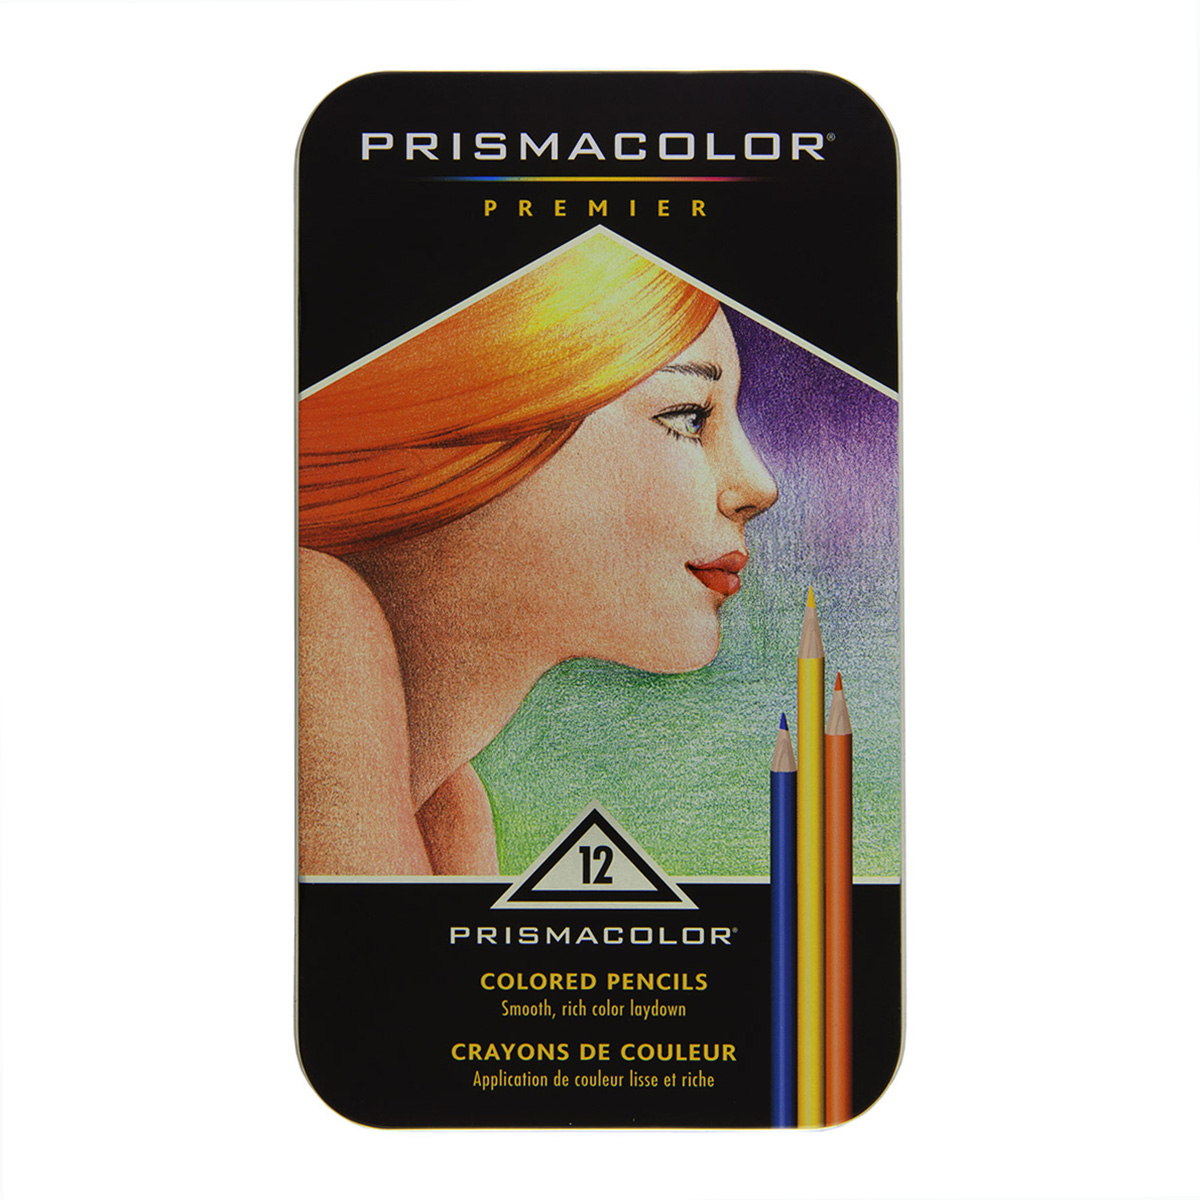 Prismacolor Colored Pencils  Prismacolor Premier Pencils